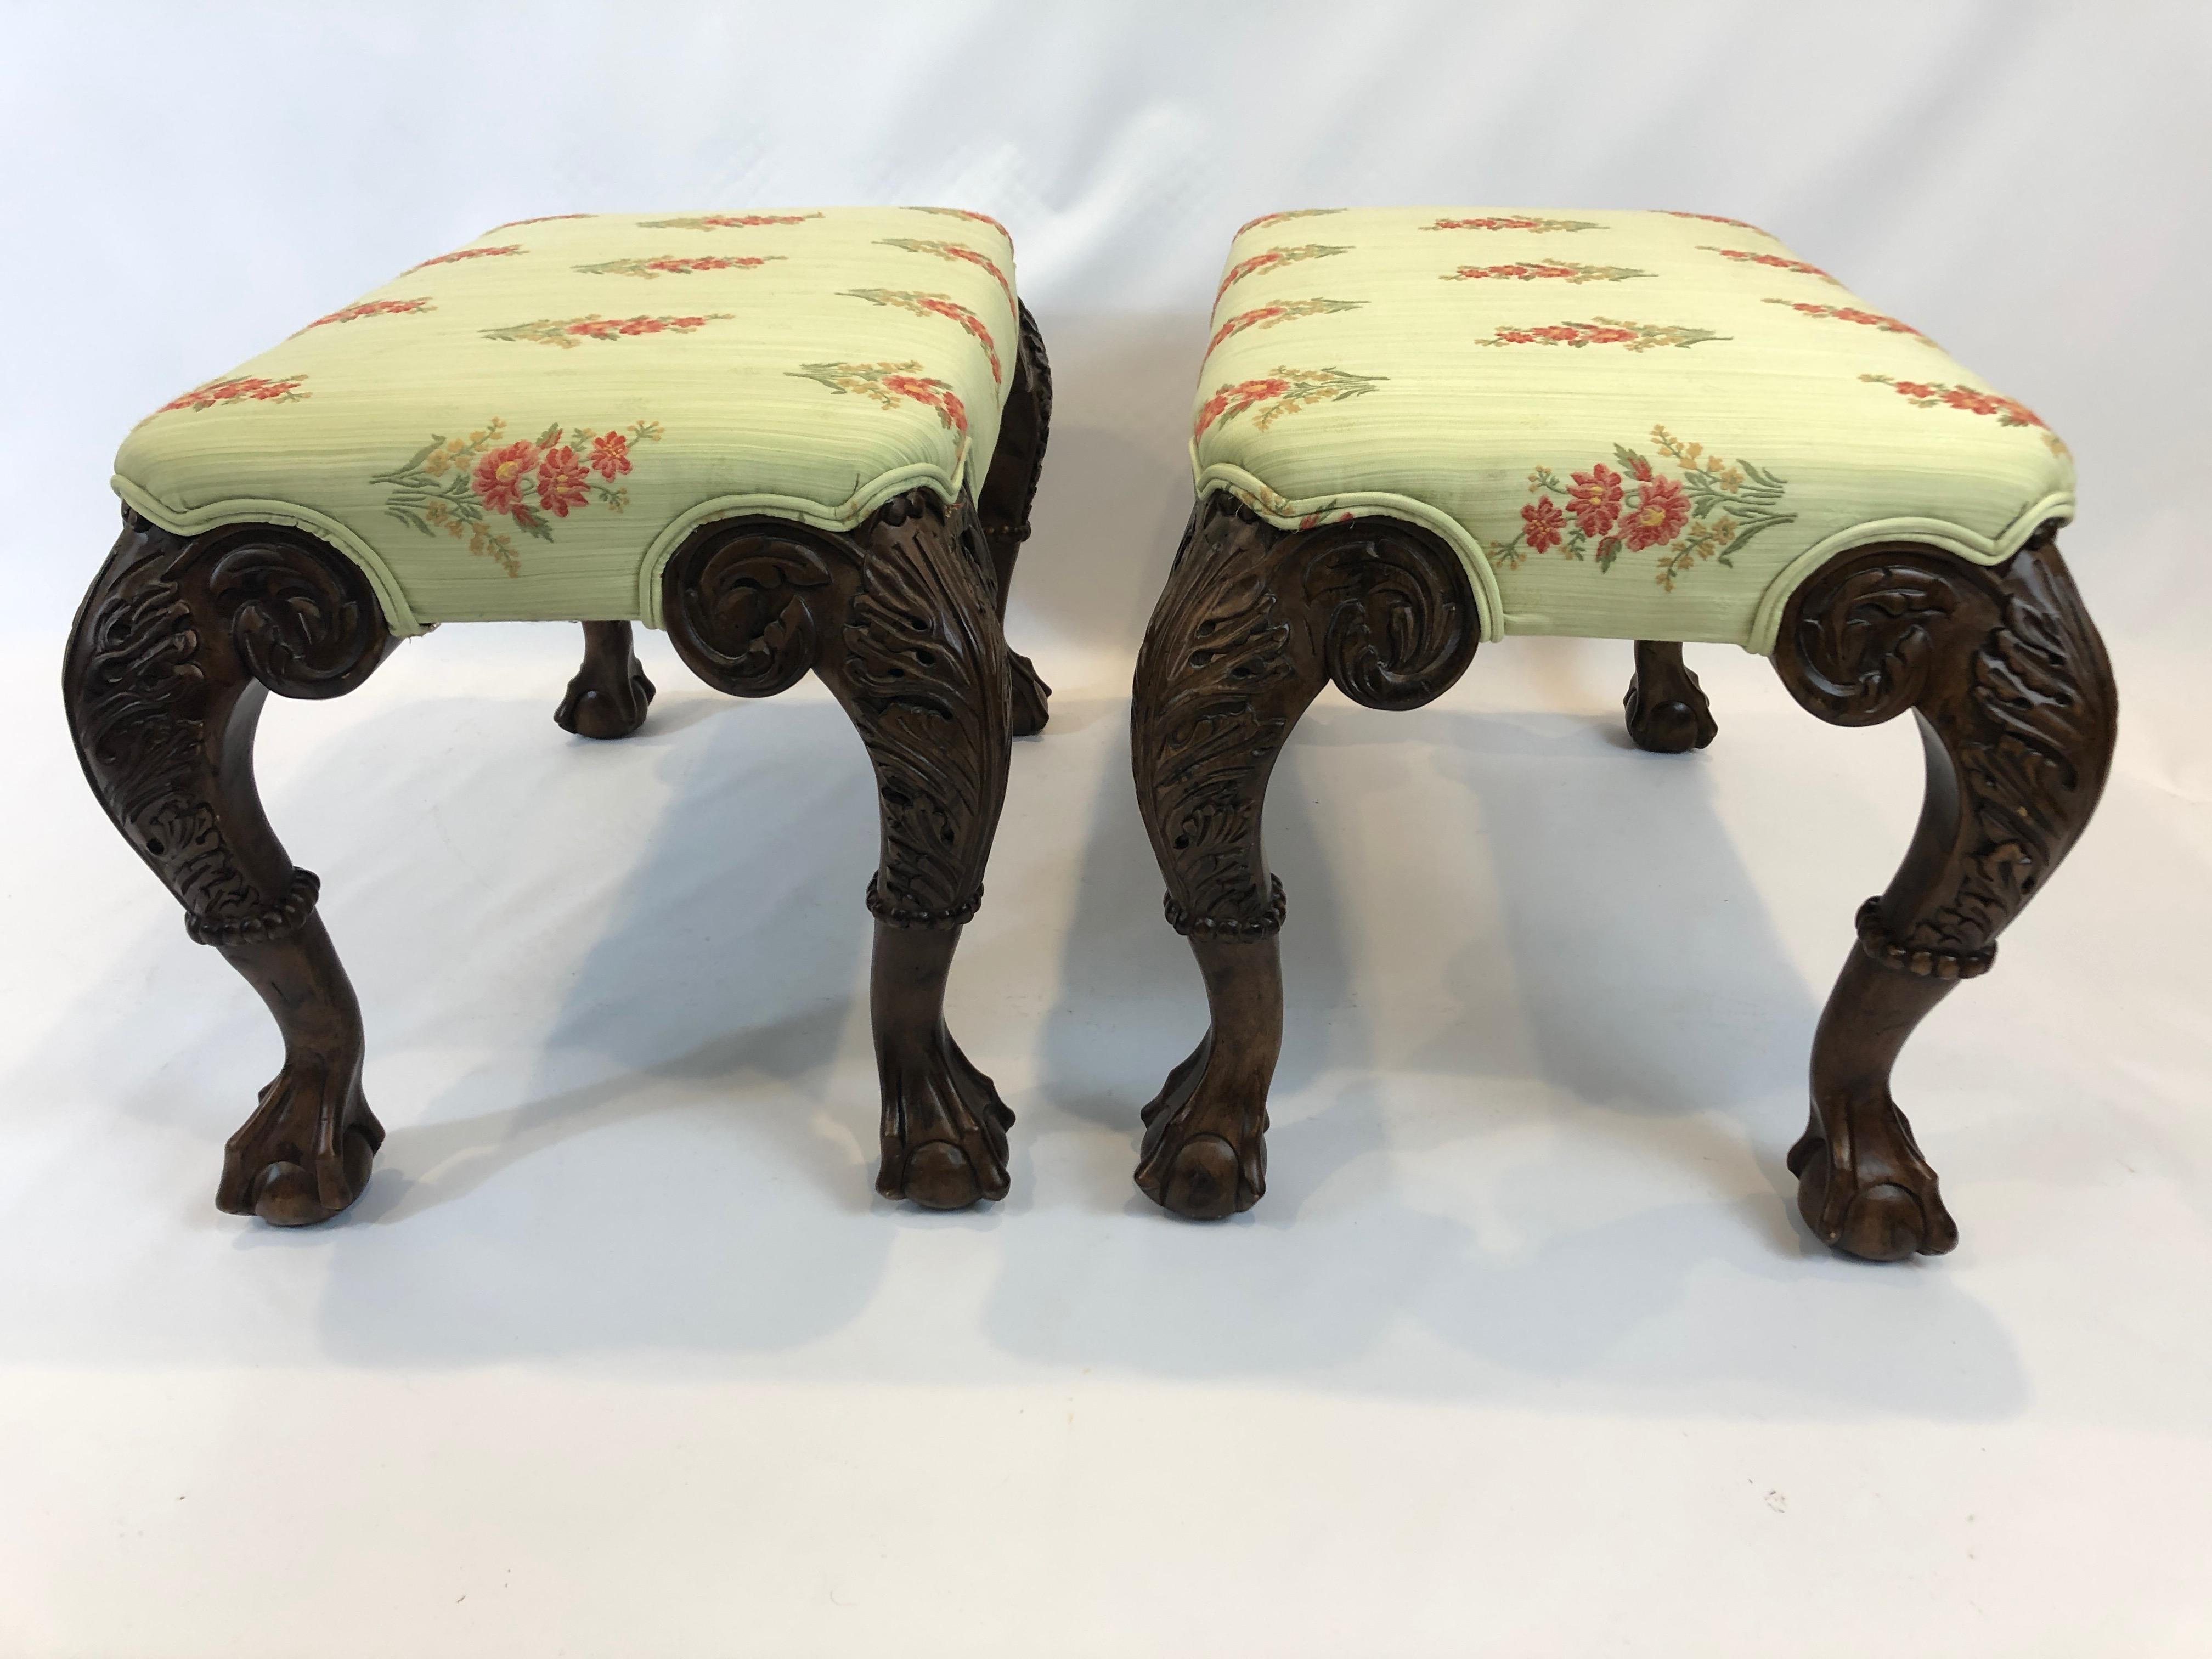 Zwei schöne rechteckige mittelgroße Vintage-Bänke mit geschnitzten Nussbaum-Cabriole-Beinen mit wunderschönen Klauen- und Kugelfüßen.